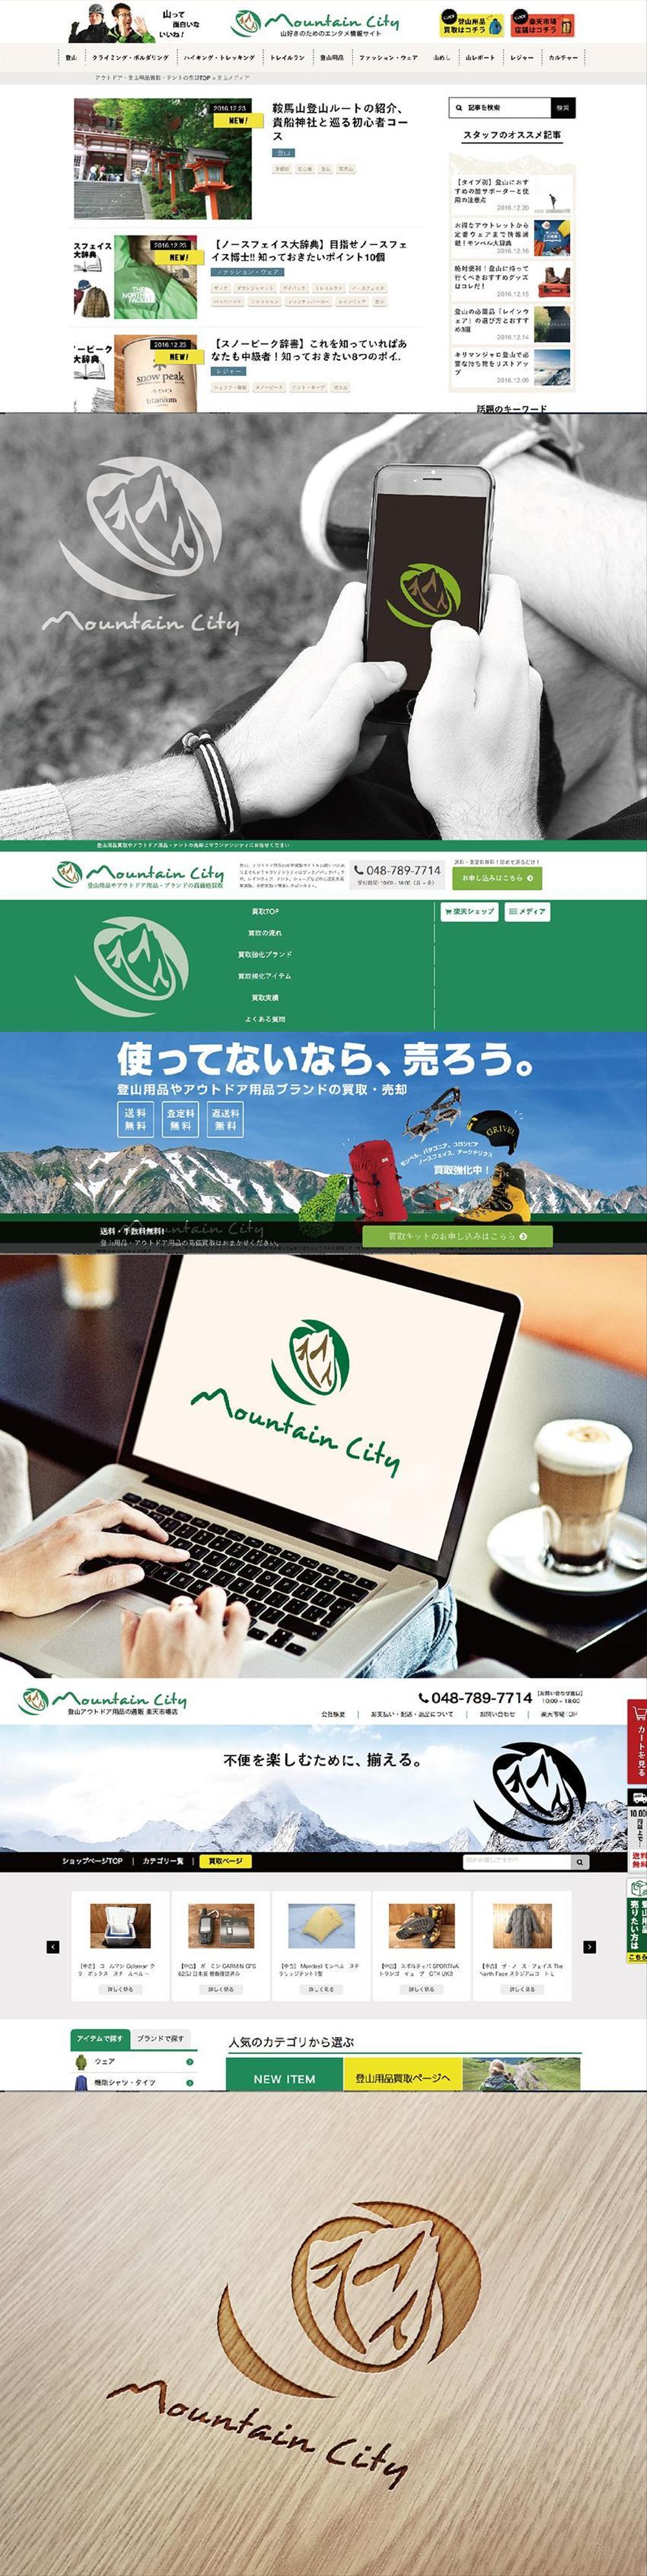 登山買取&メディアサイト「マウンテンシティ」のロゴ改修